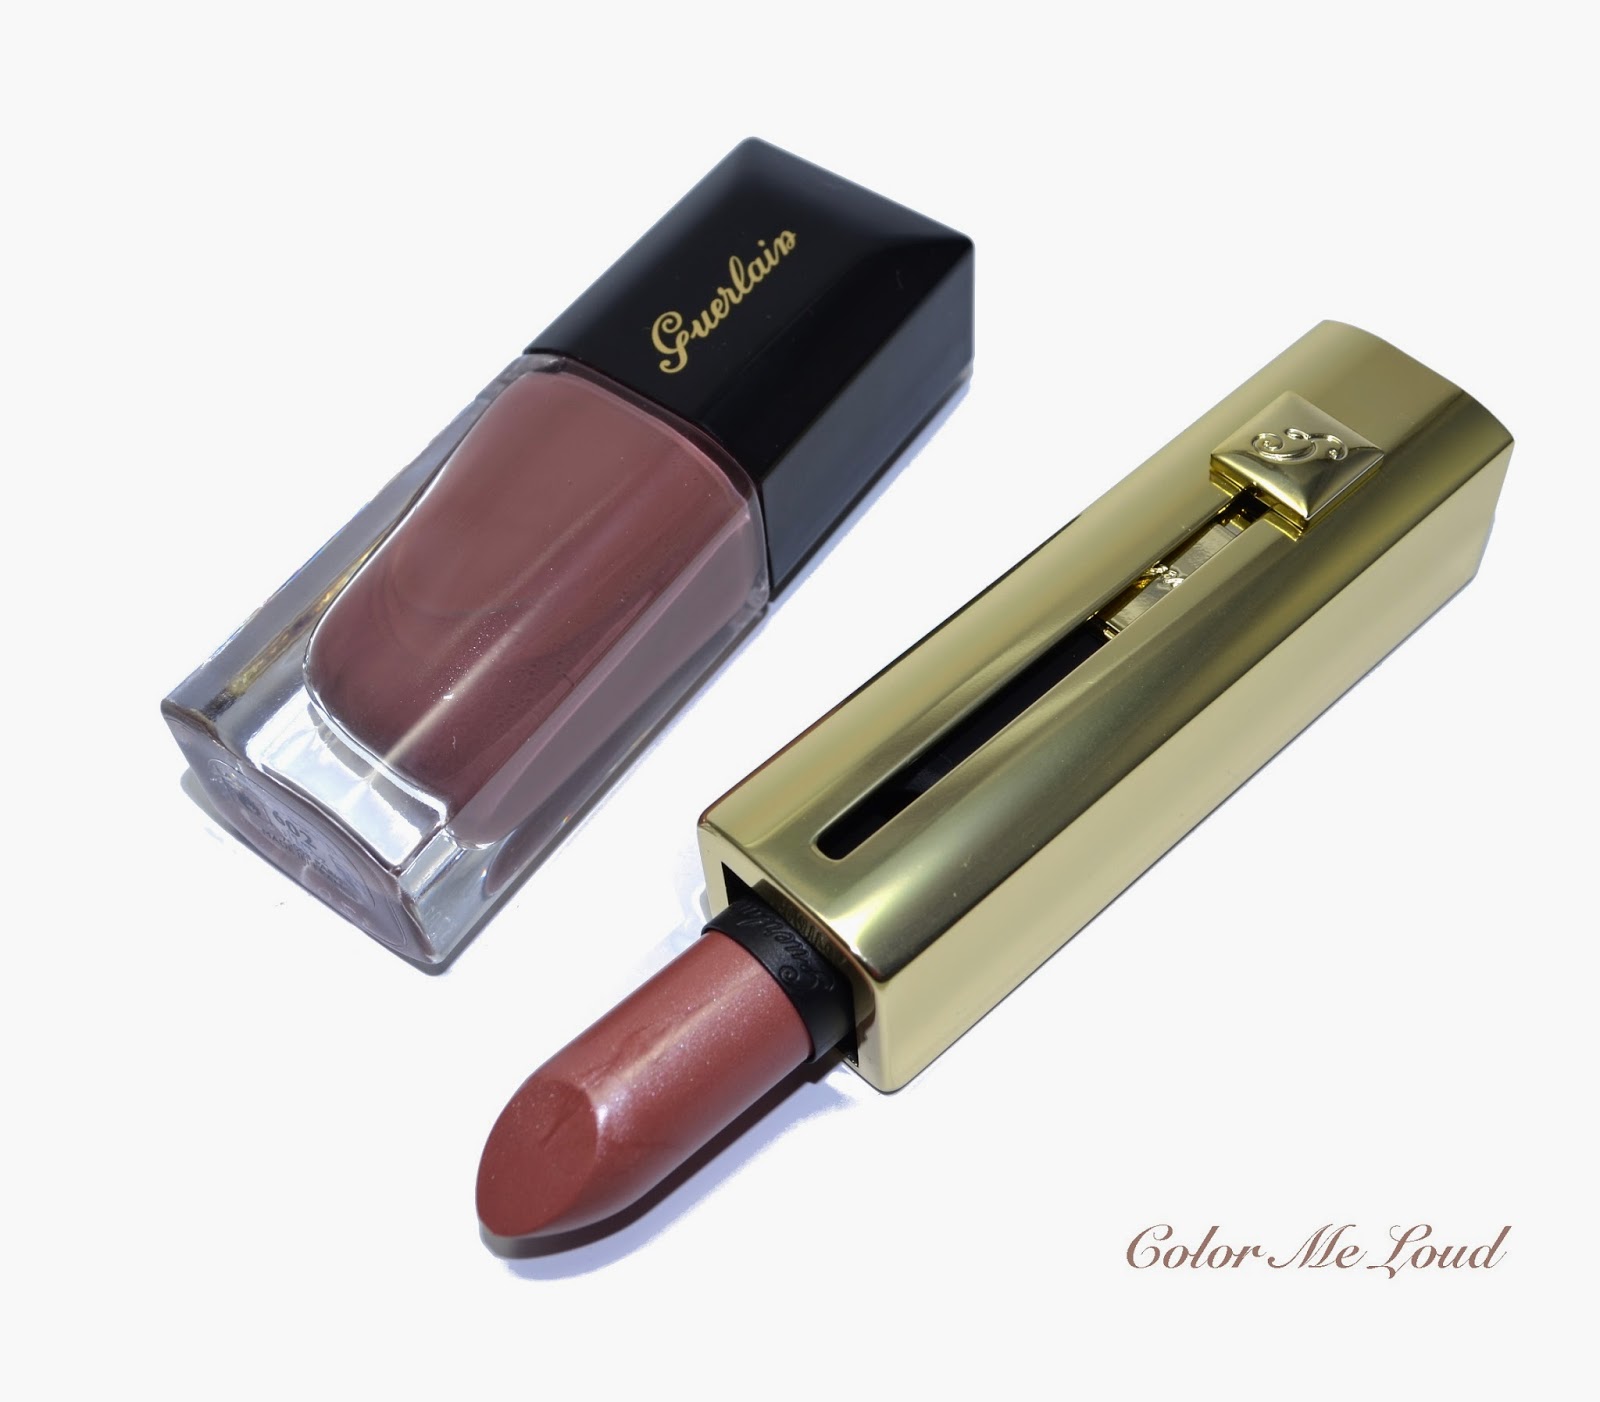 Guerlain Tonka Impériale Duo, La Laque #602 Nail Polish and Rouge Automatique #602 Lipstick, Review, Swatch & FOTD